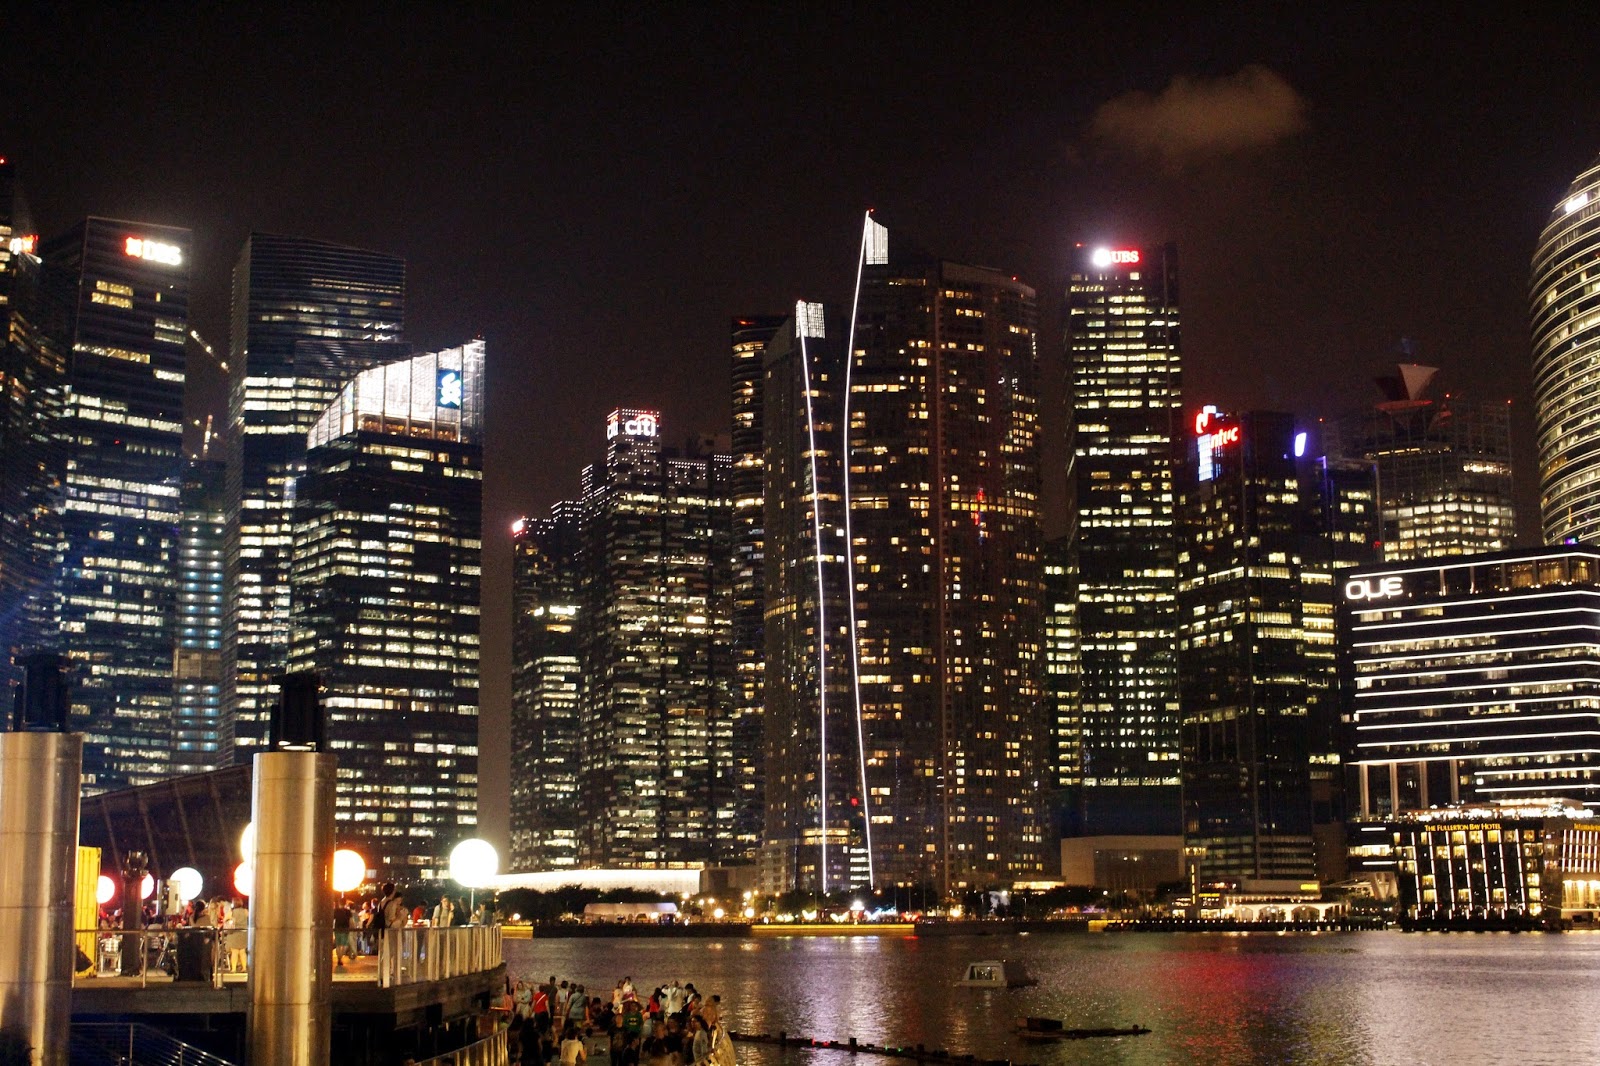  Foto  Keindahan Singapore Di Malam  Hari  WEB LOVEHEAVEN 07